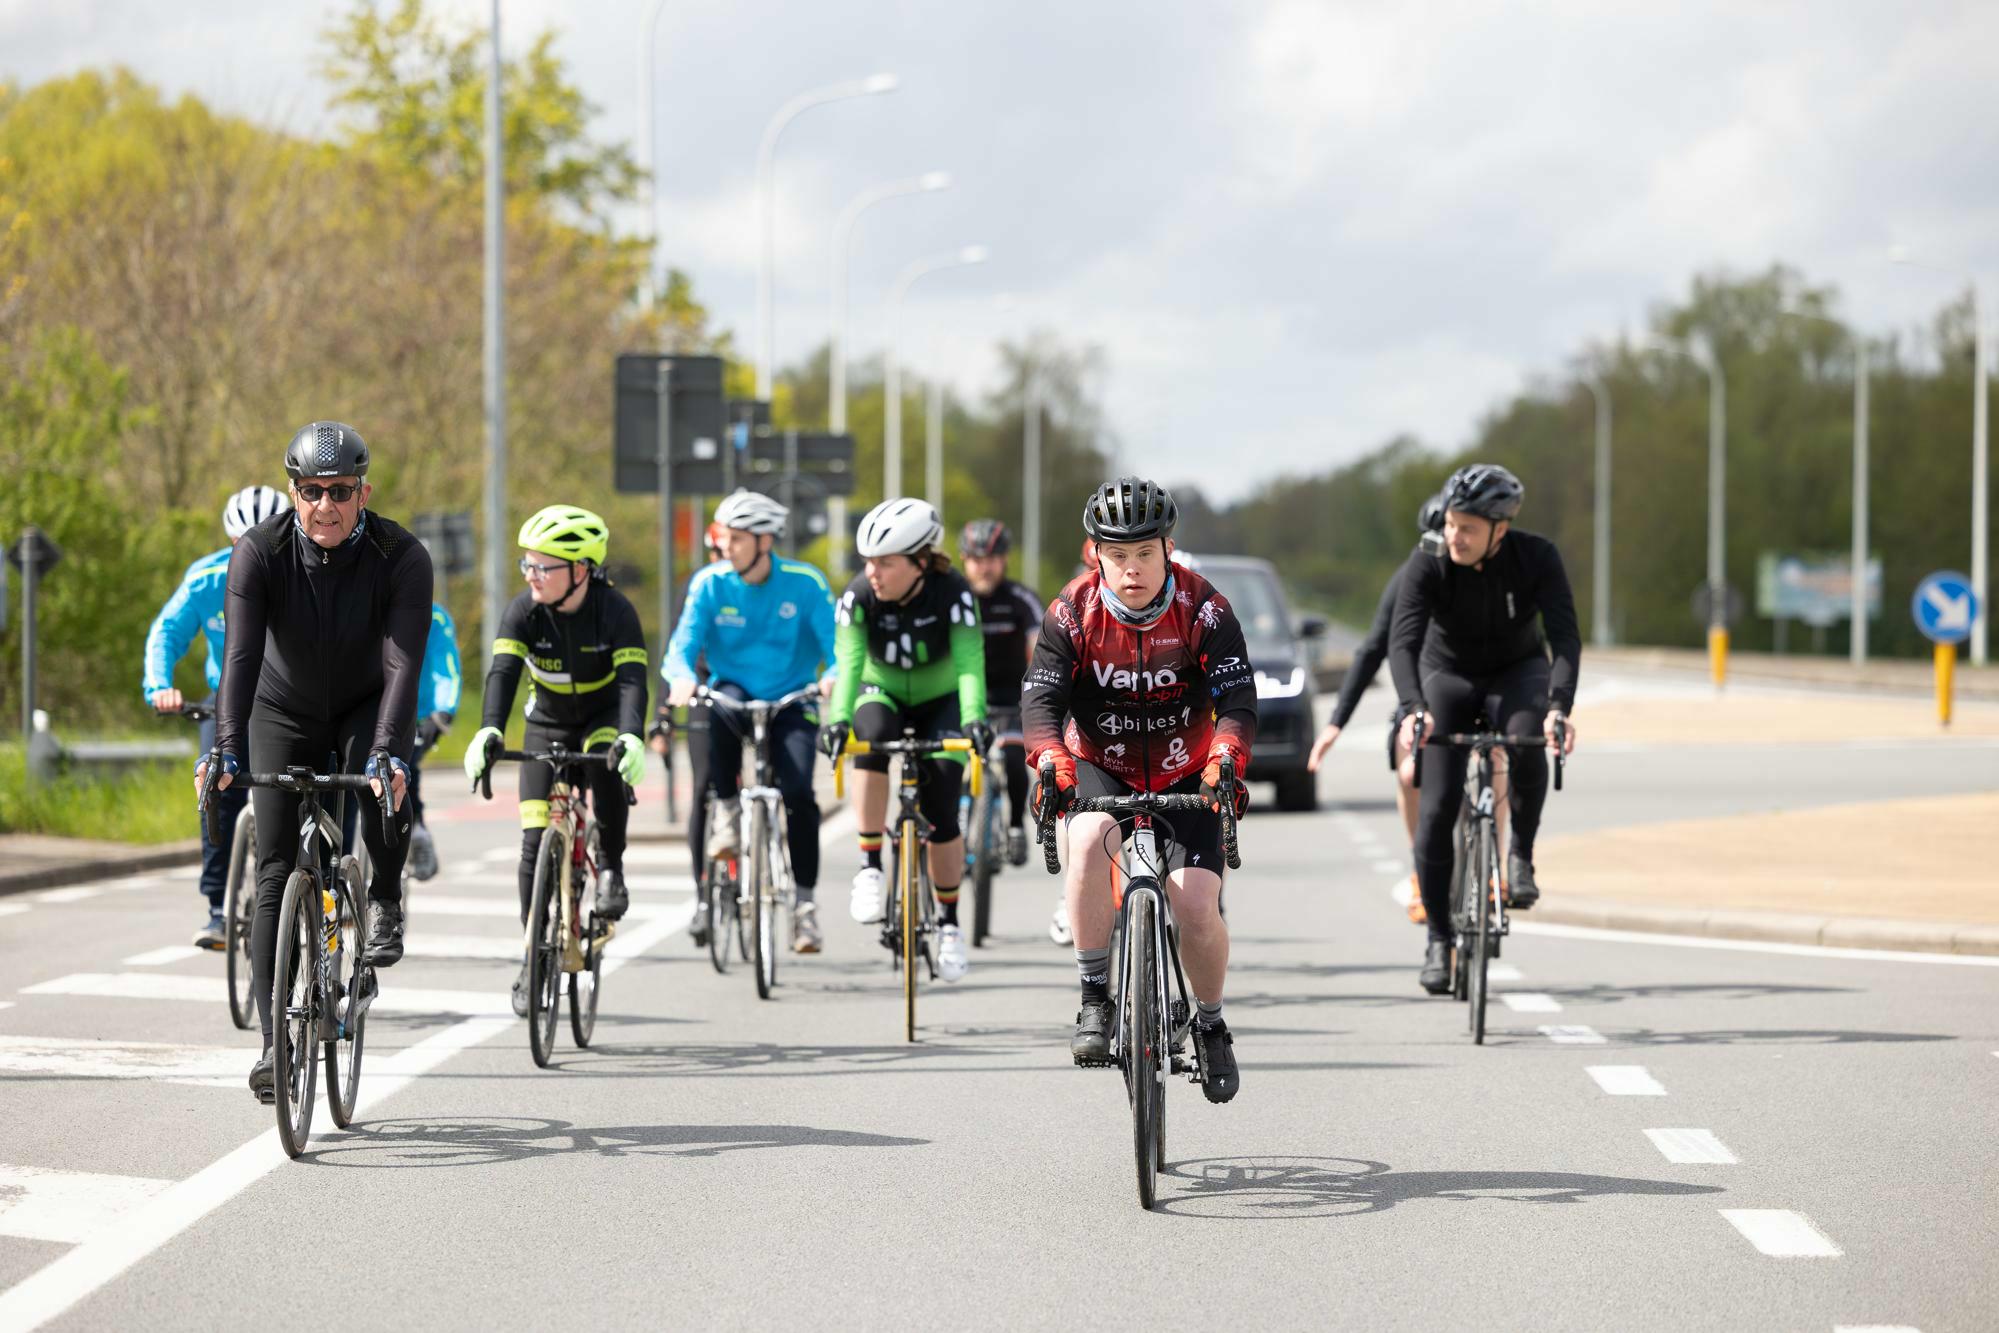 Une course réservée aux personnes en situation de handicap mental dans le cyclisme belge